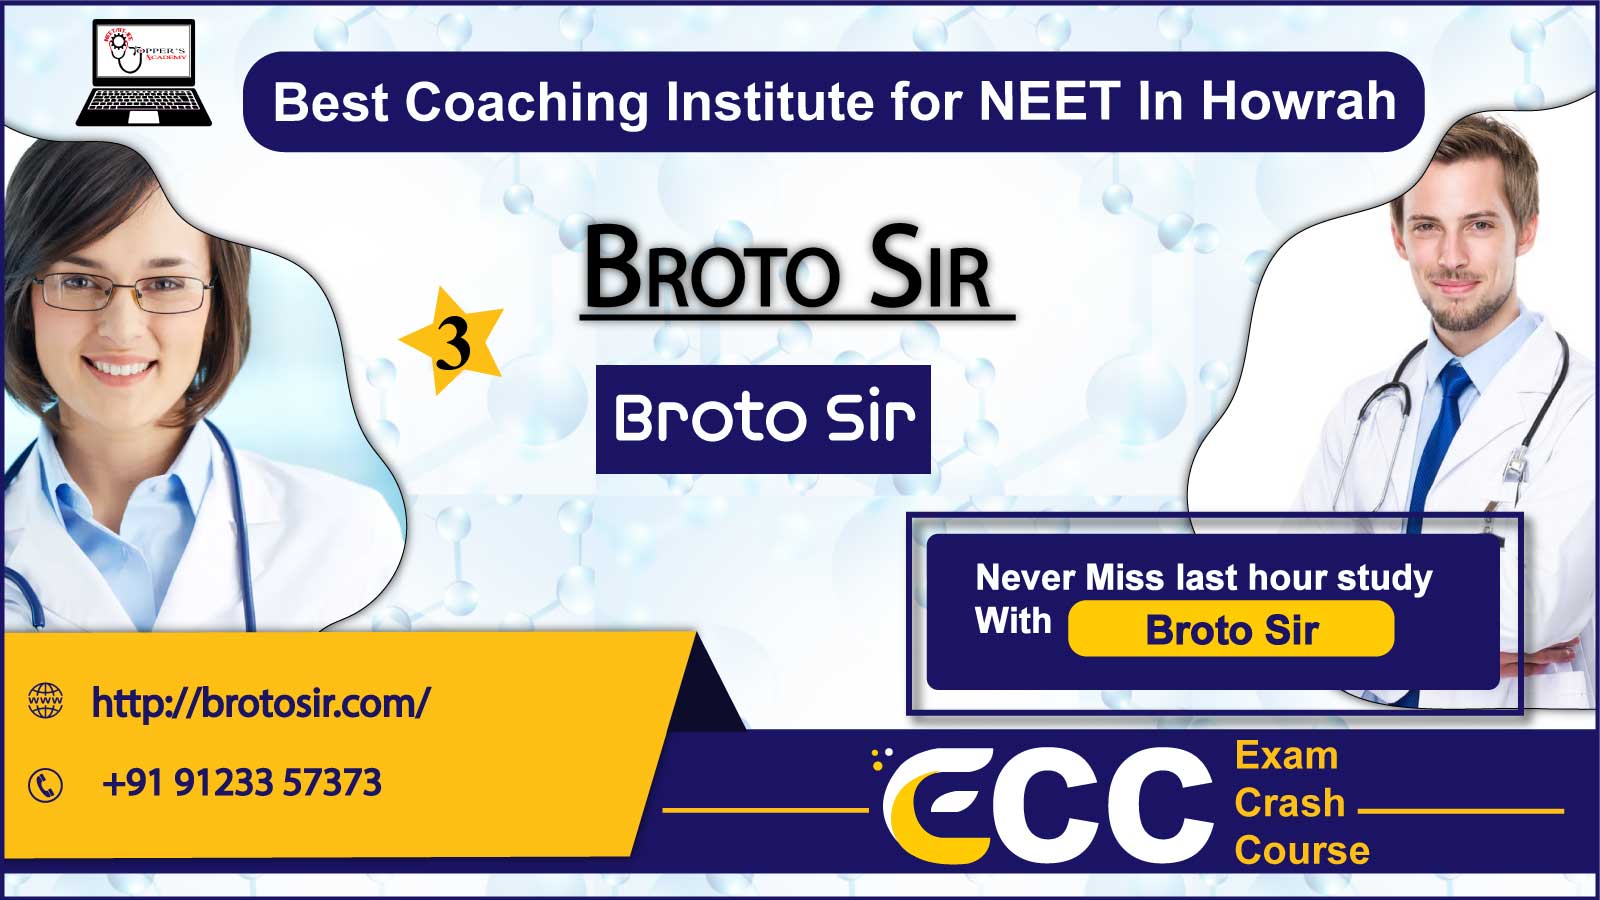 Broto Sir NEET Coaching in Howrah